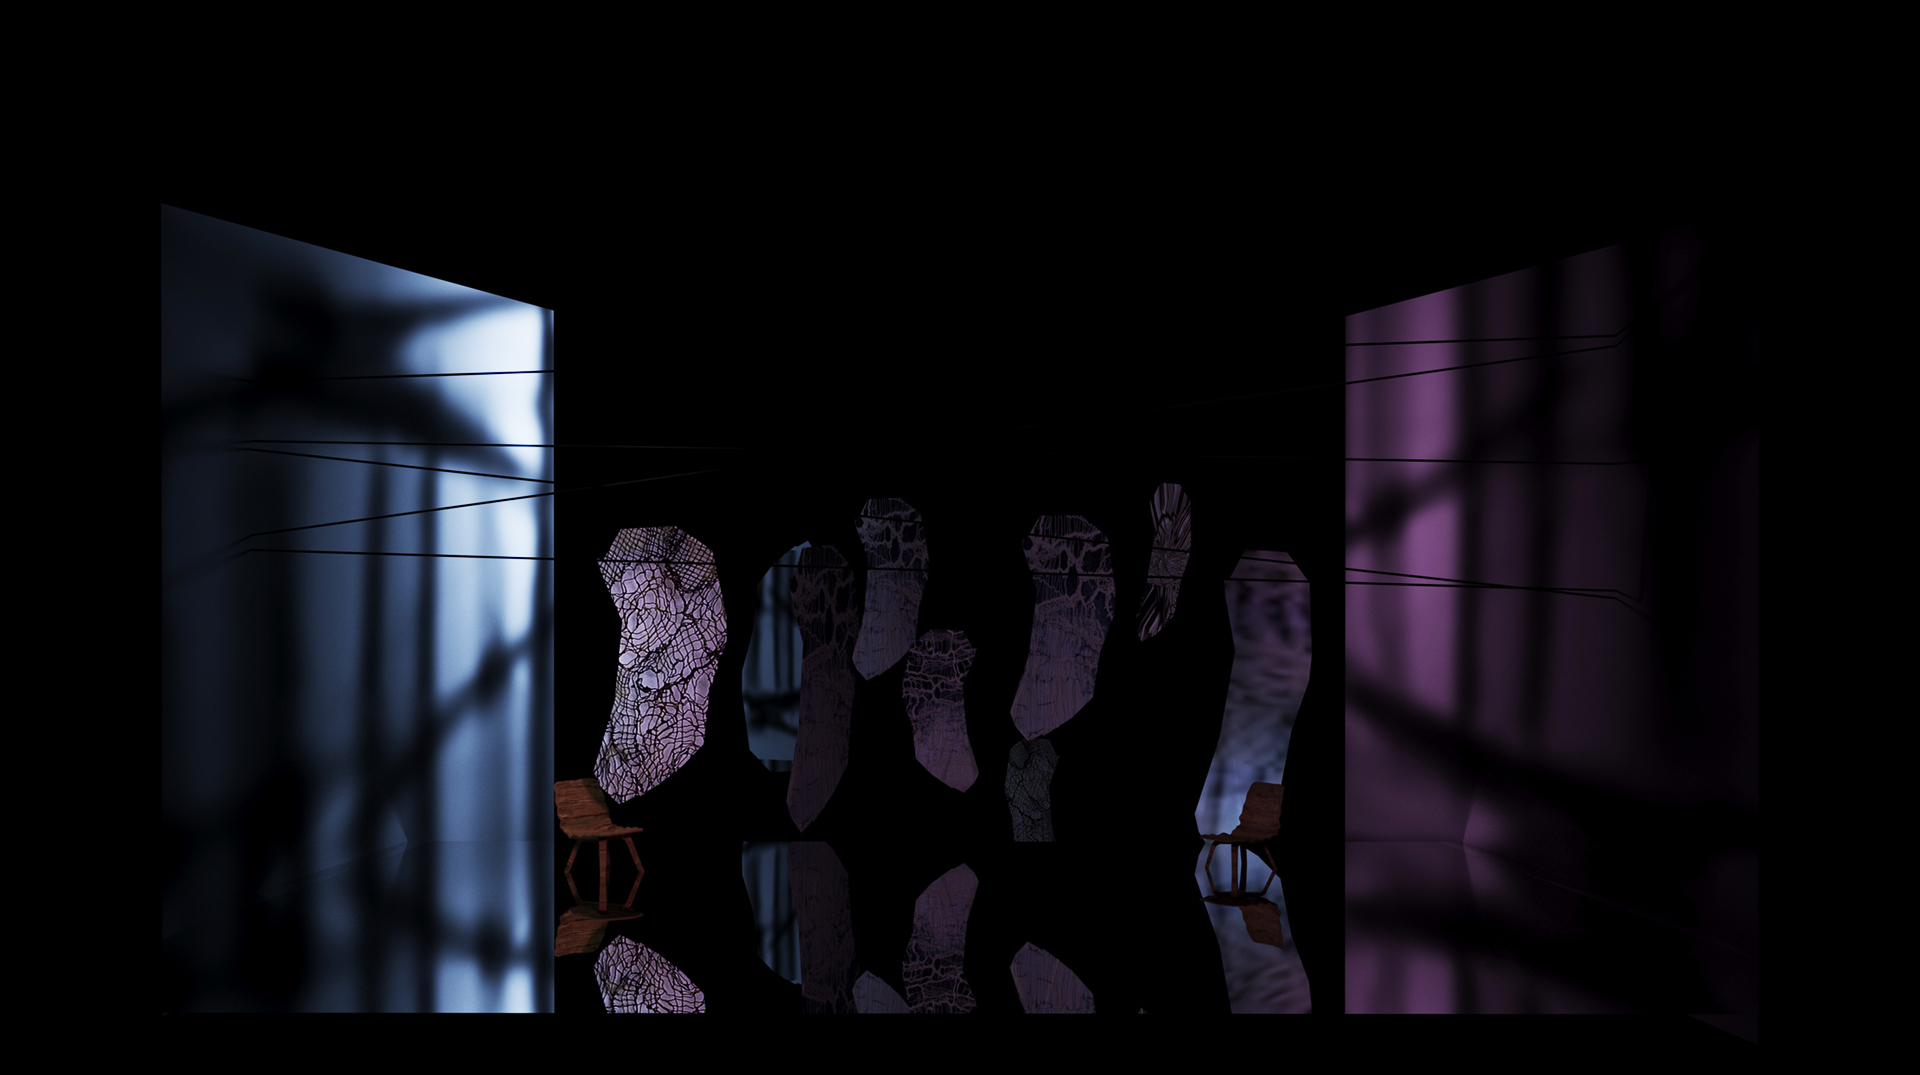 Wizualizacja scenografii ukazująca projekt z pracowni kierunkowej. Kompozycja forma zawieszonych na cięgnach i zaprezentowanych na ciemnym tle.